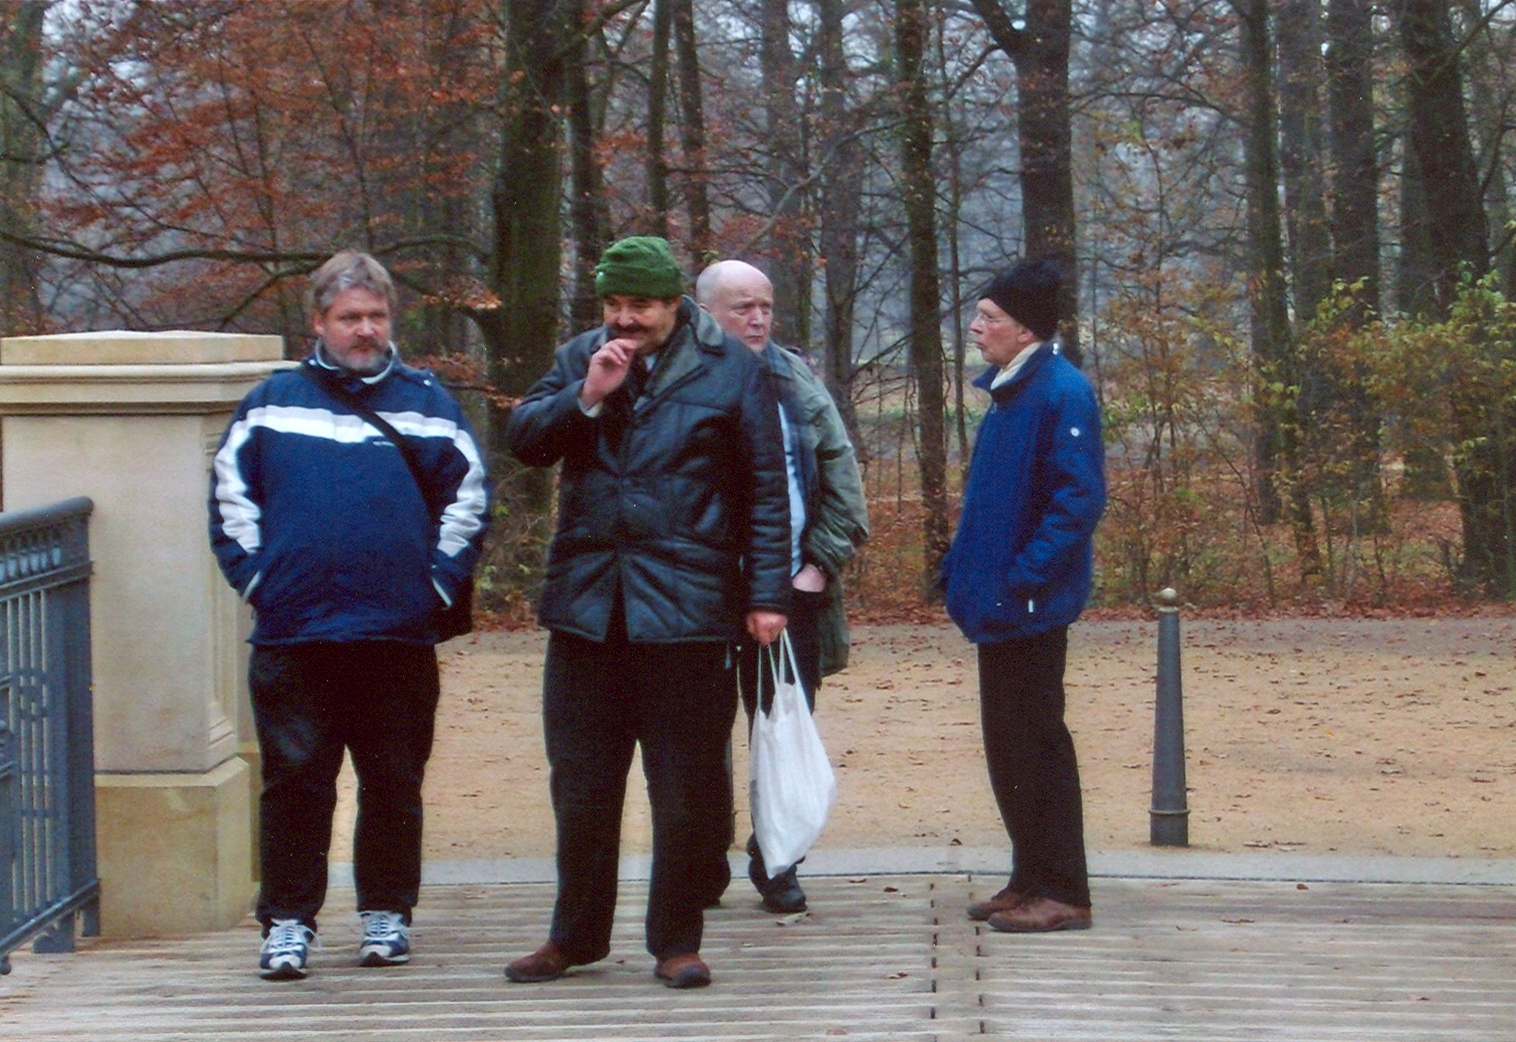 Farbfoto: Drei Berliner auf einer Brücke in dem Park von Fürst Pückler - Muskau im November 2011 in Bad Muskau. Fotograf: Ralph Ivert.